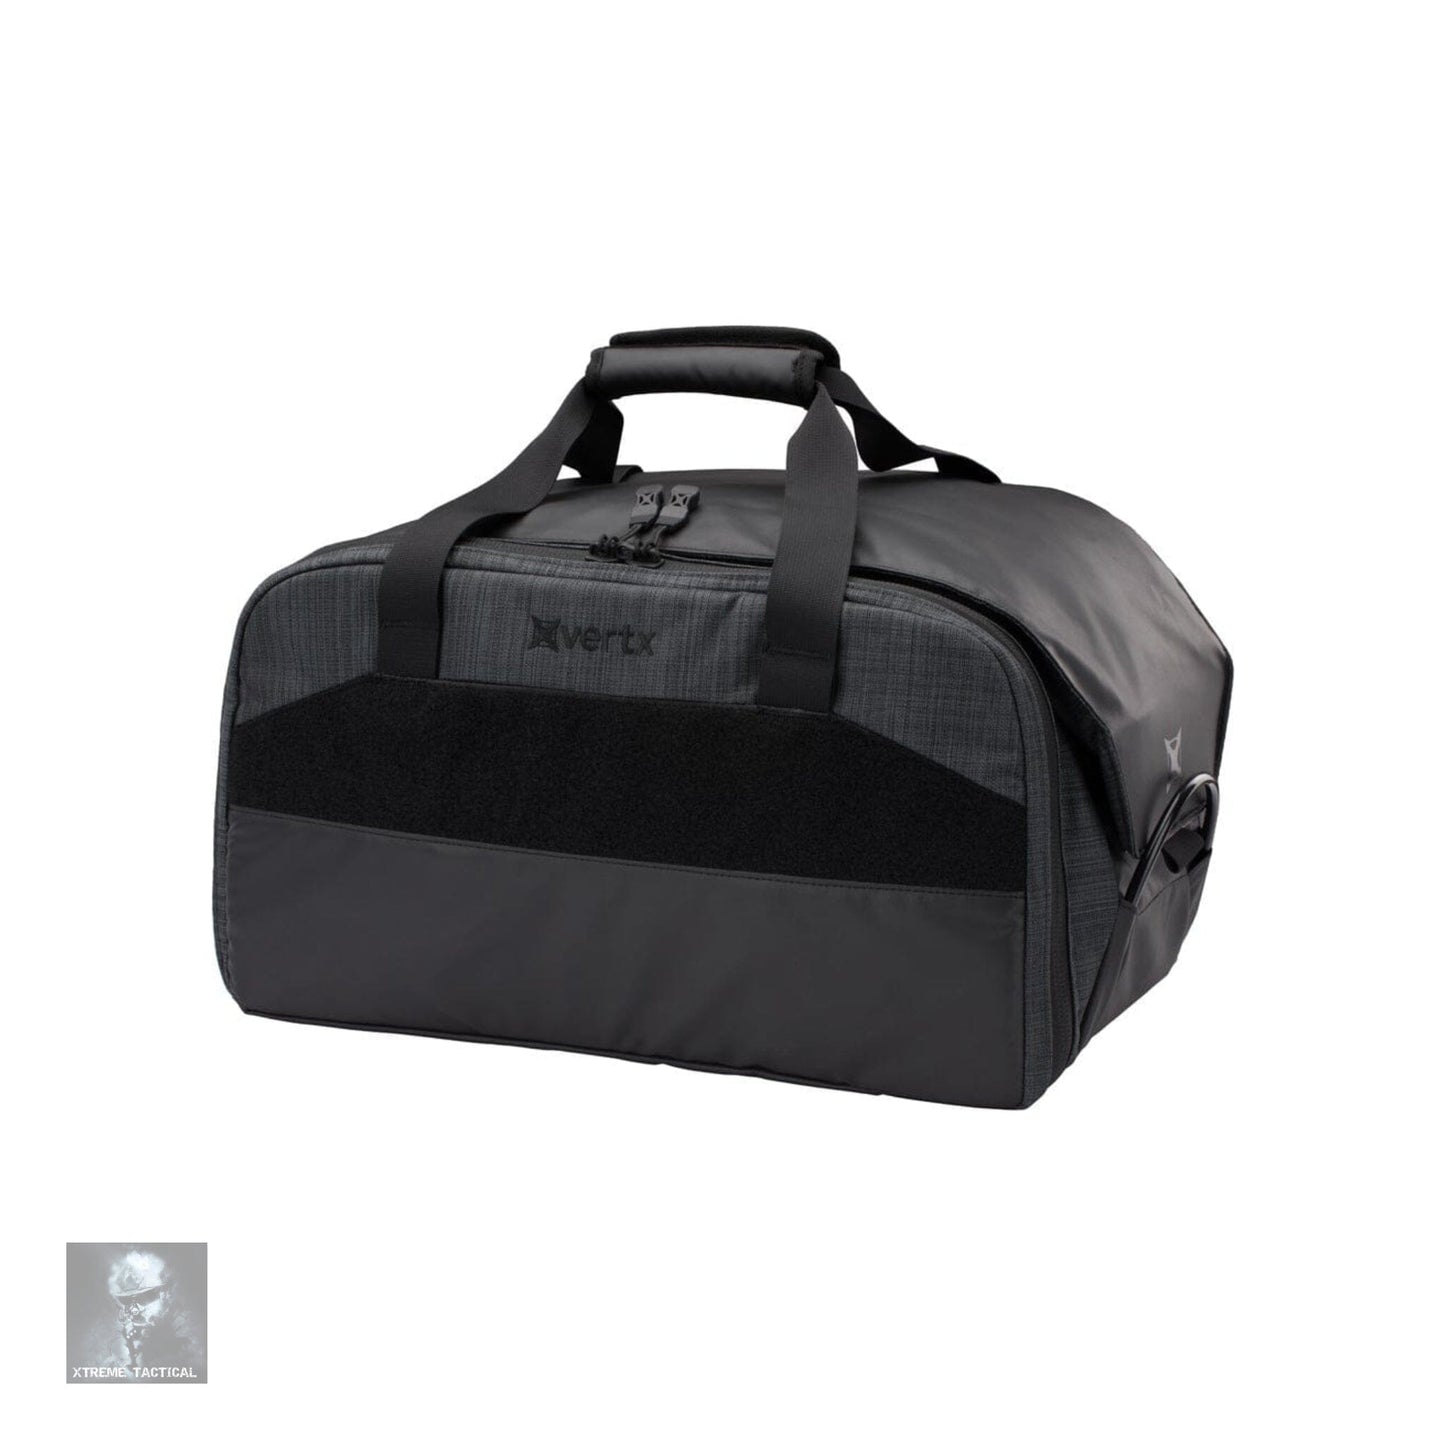 Vertx COF Heavy Range Bag Tactical Backpack Vertx 